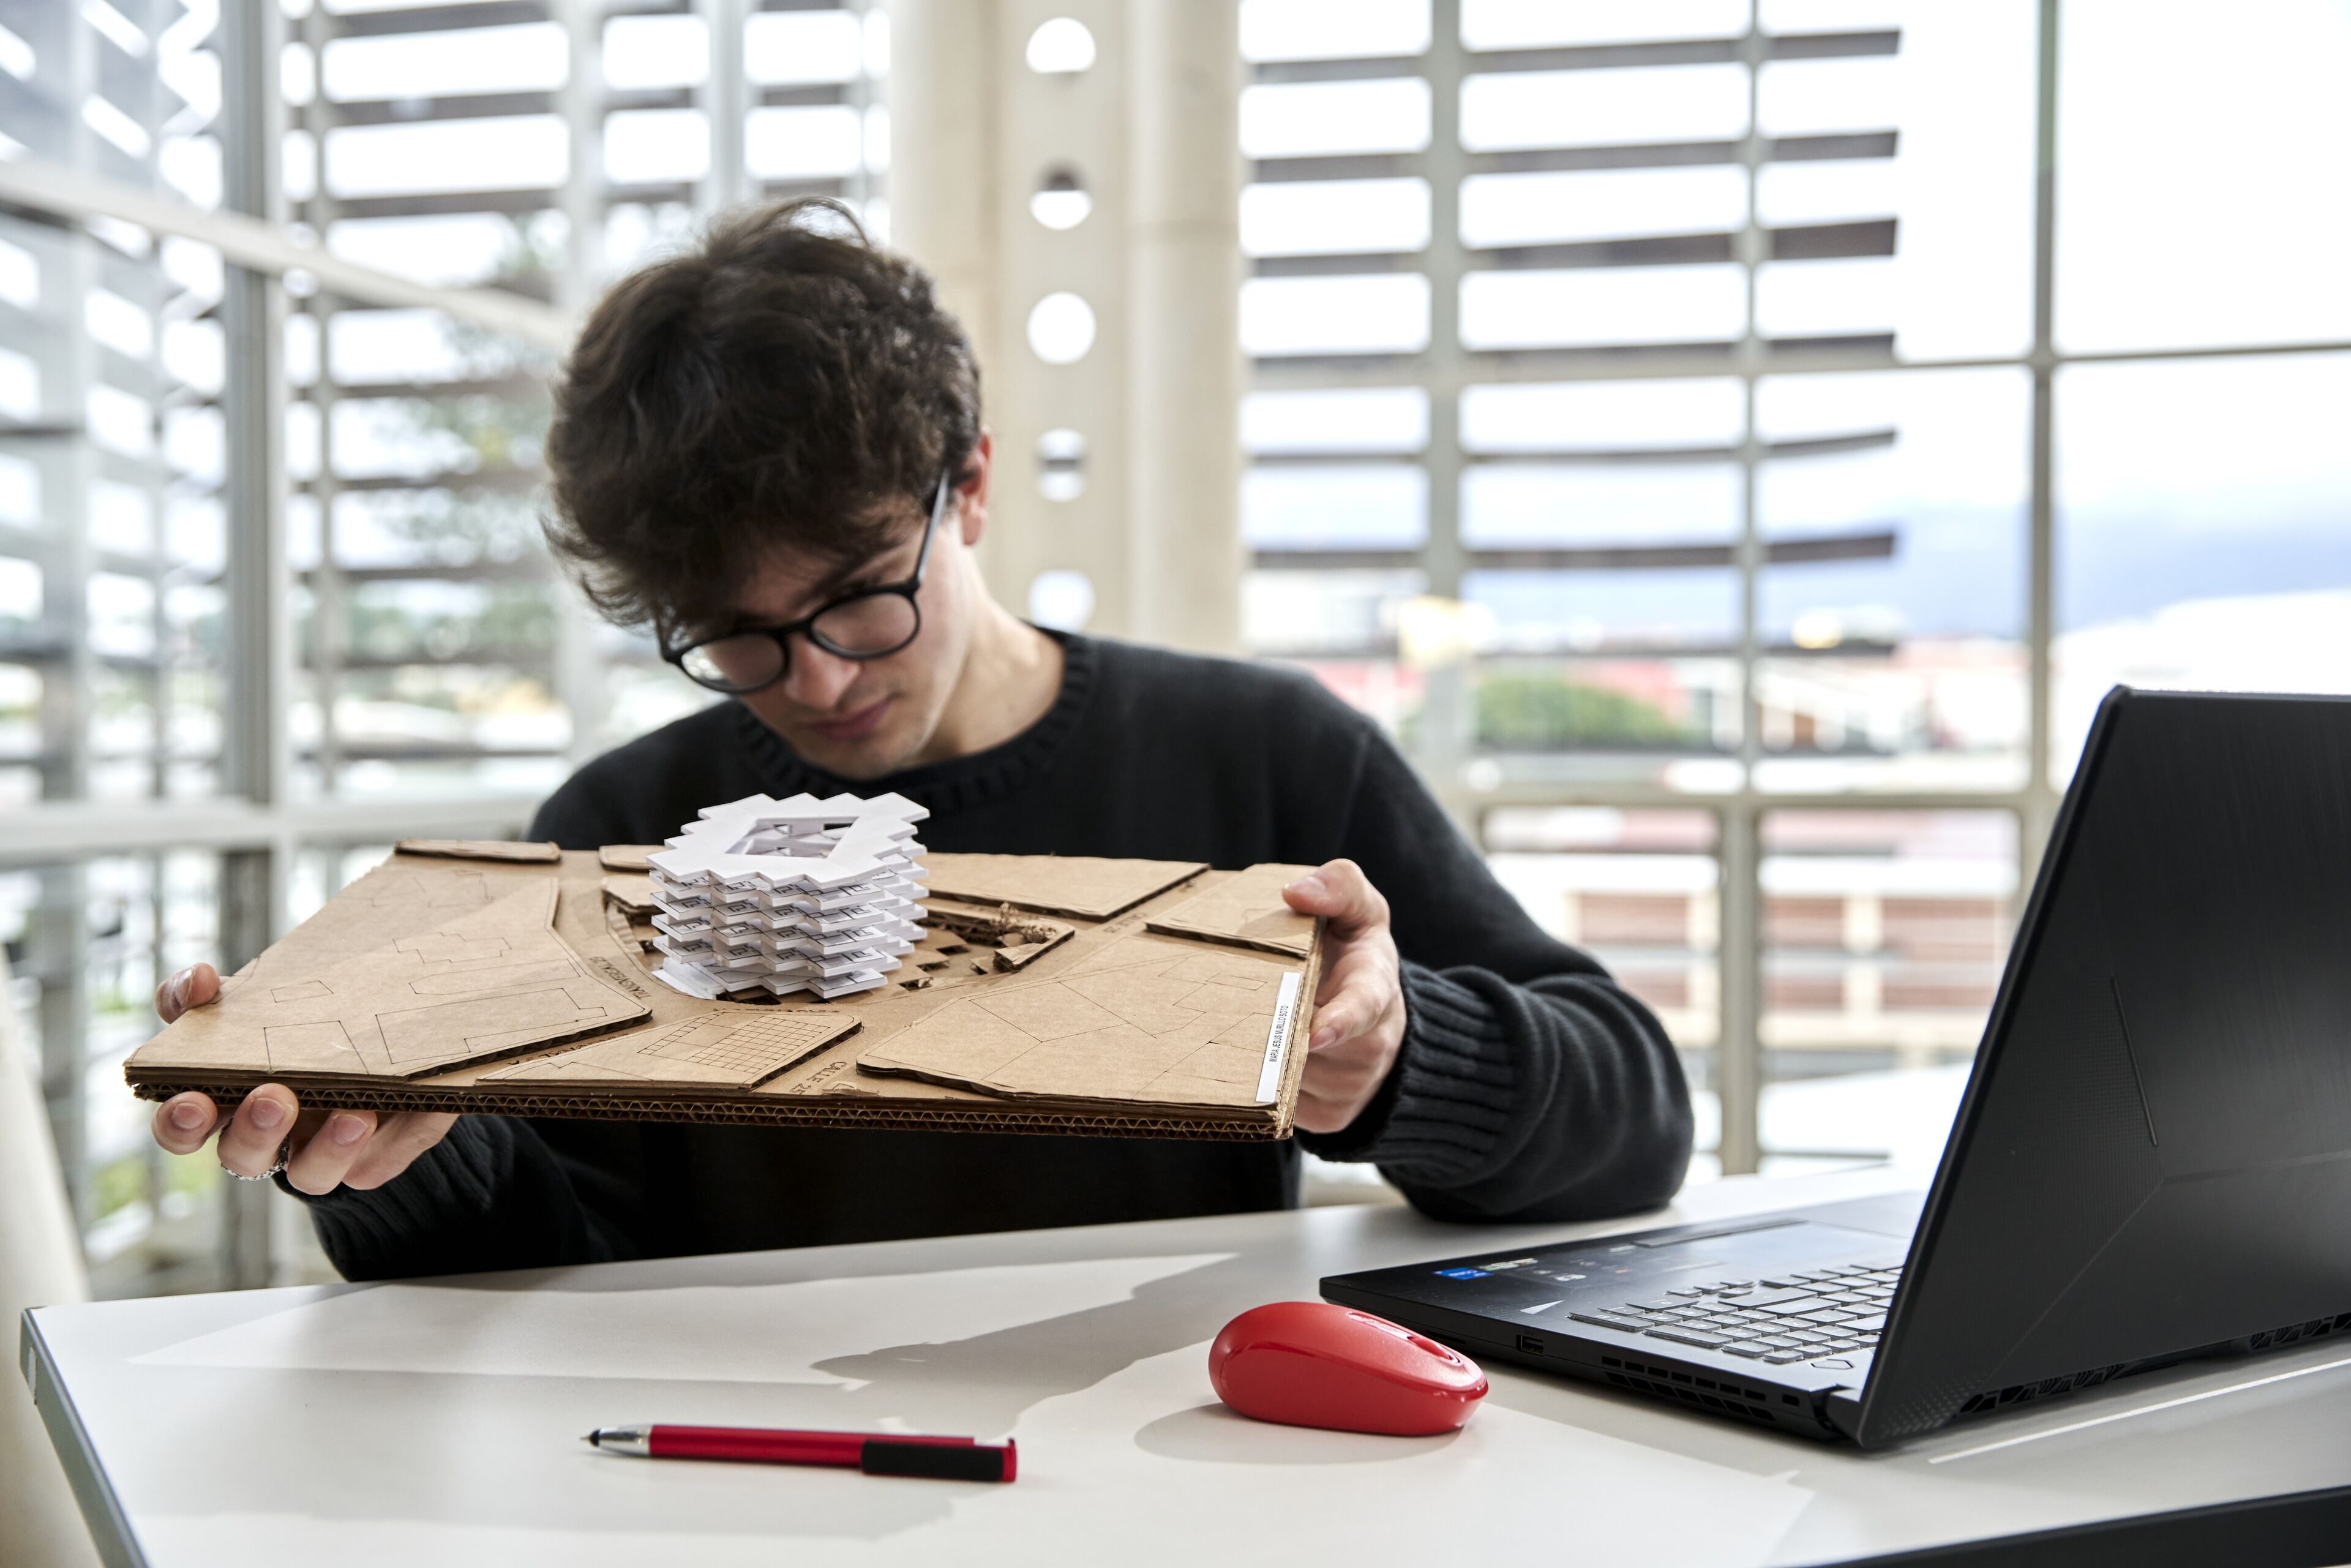 Un jeune architecte examine attentivement un modèle architectural blanc sur un socle en carton, avec un ordinateur portable et une souris rouge sur la table.